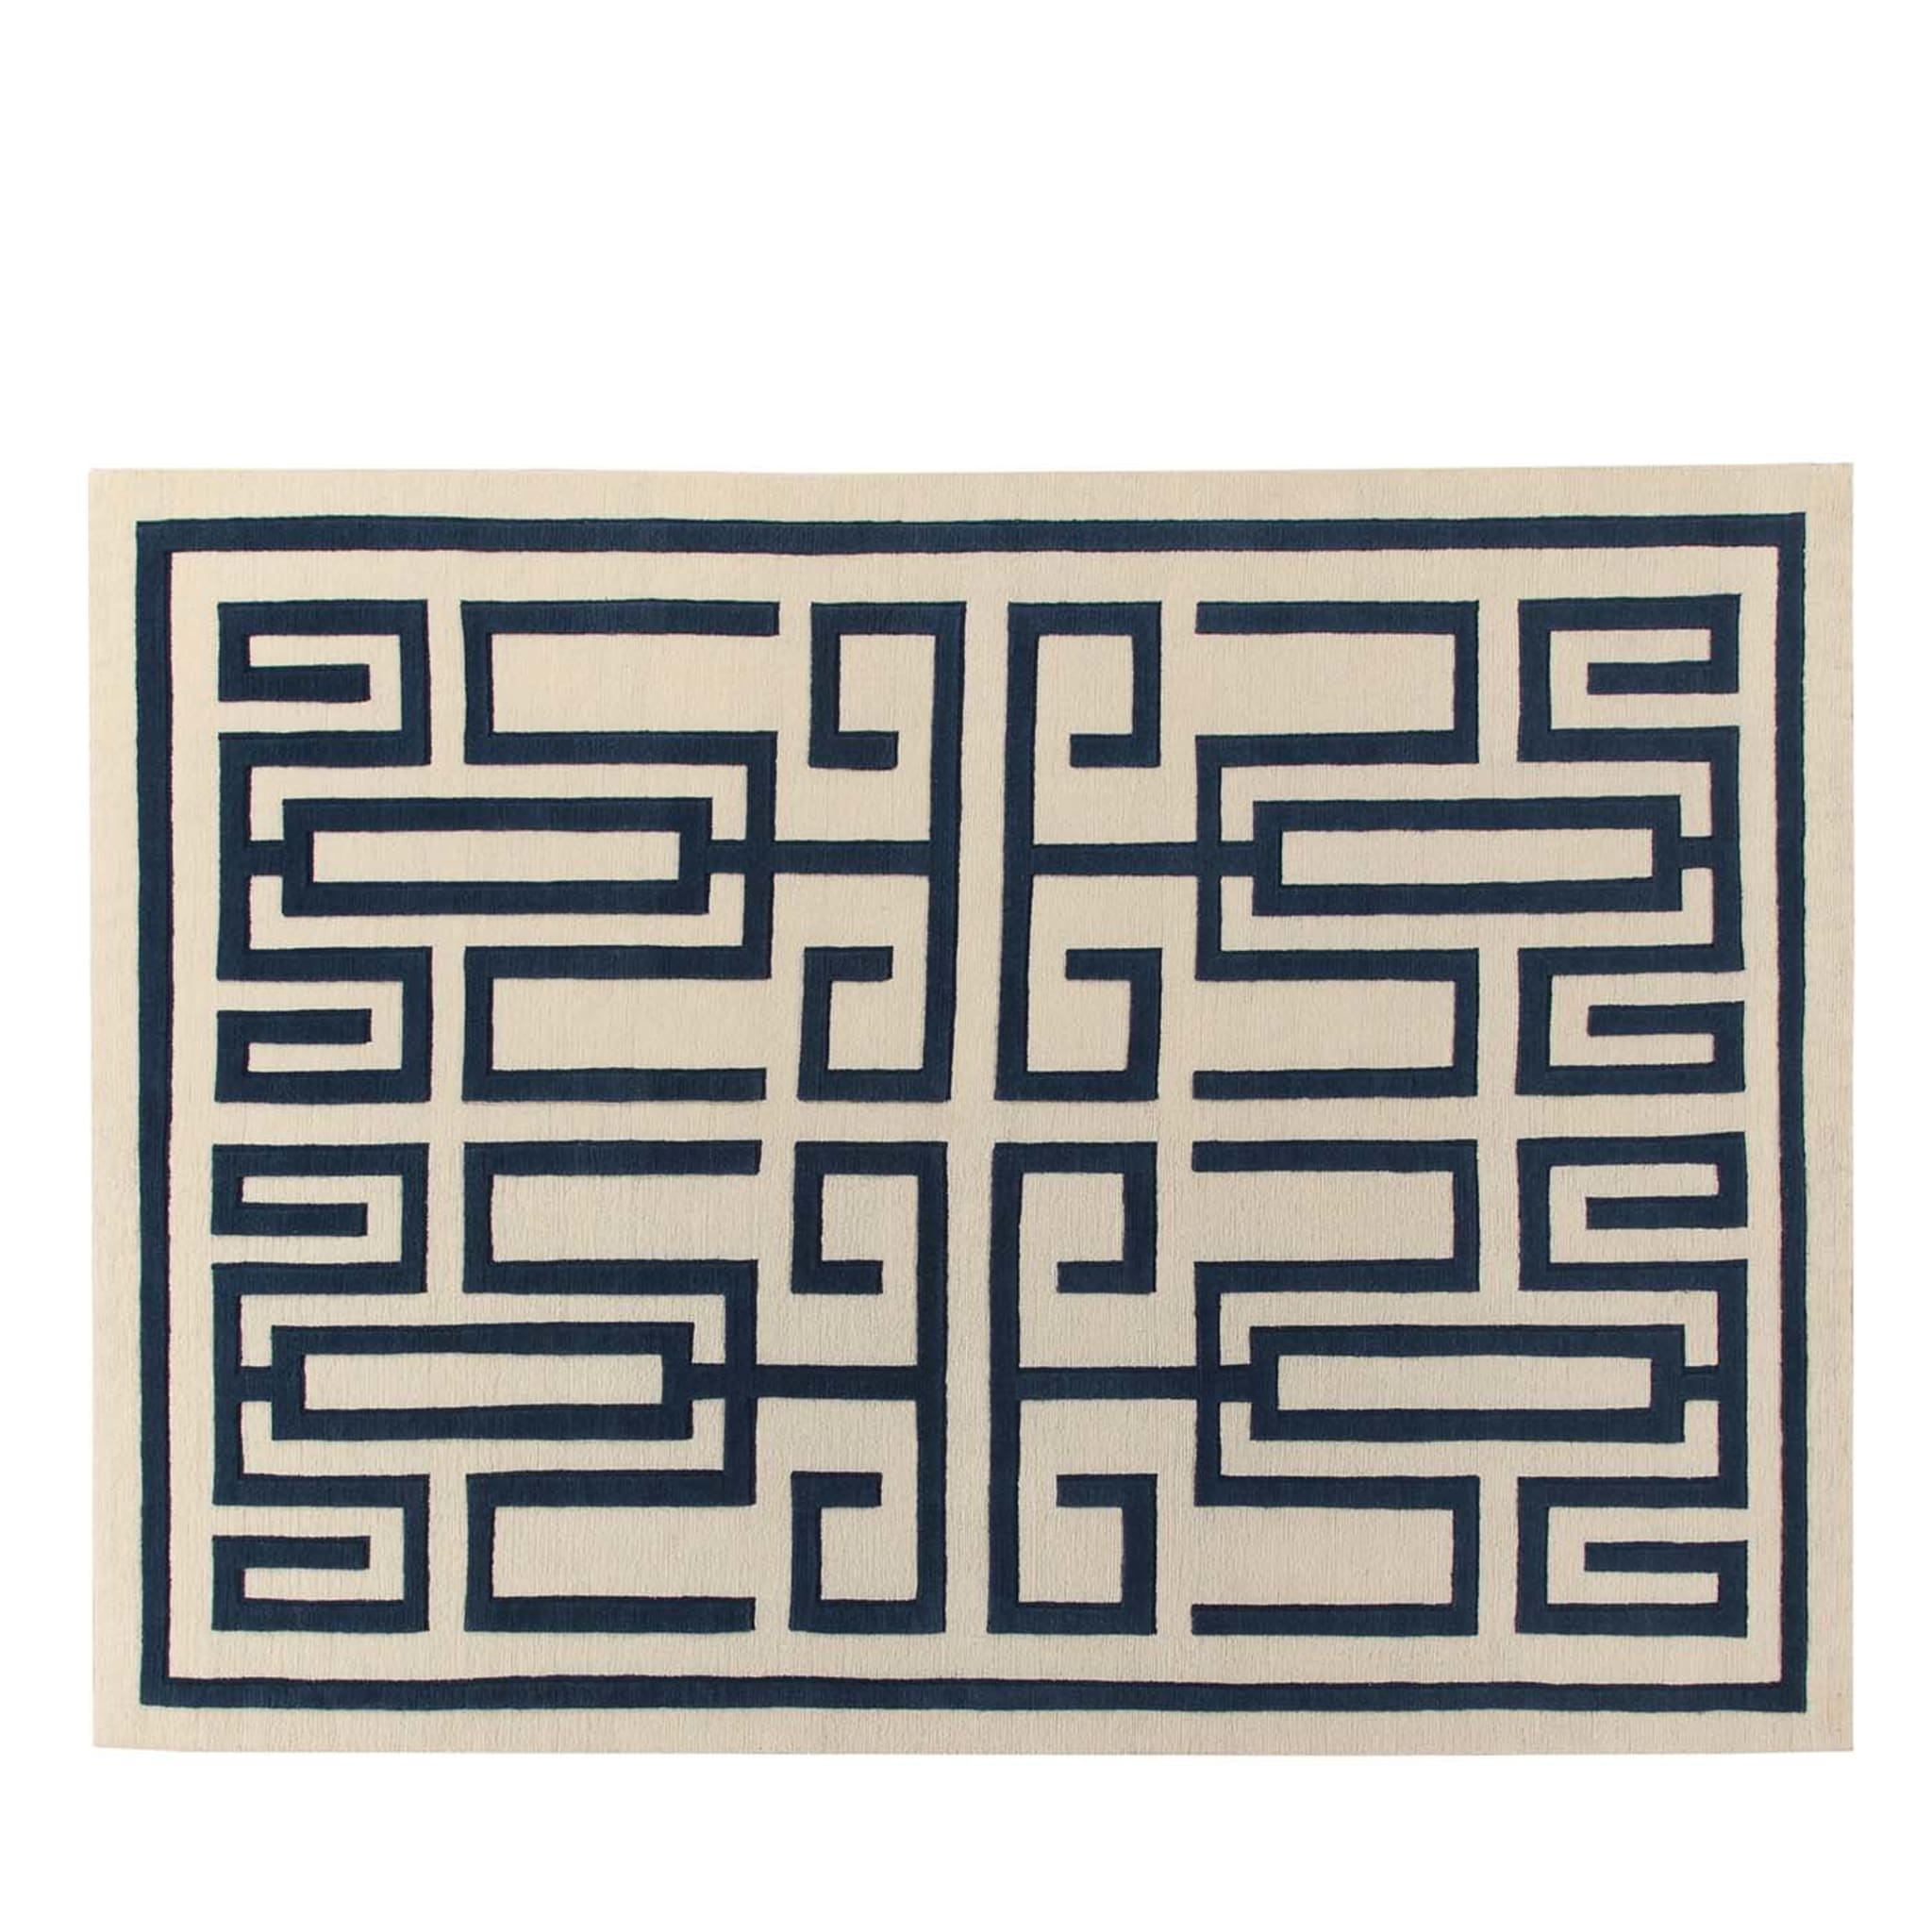 Labirinto Blue Carpet by Gio Ponti - Main view